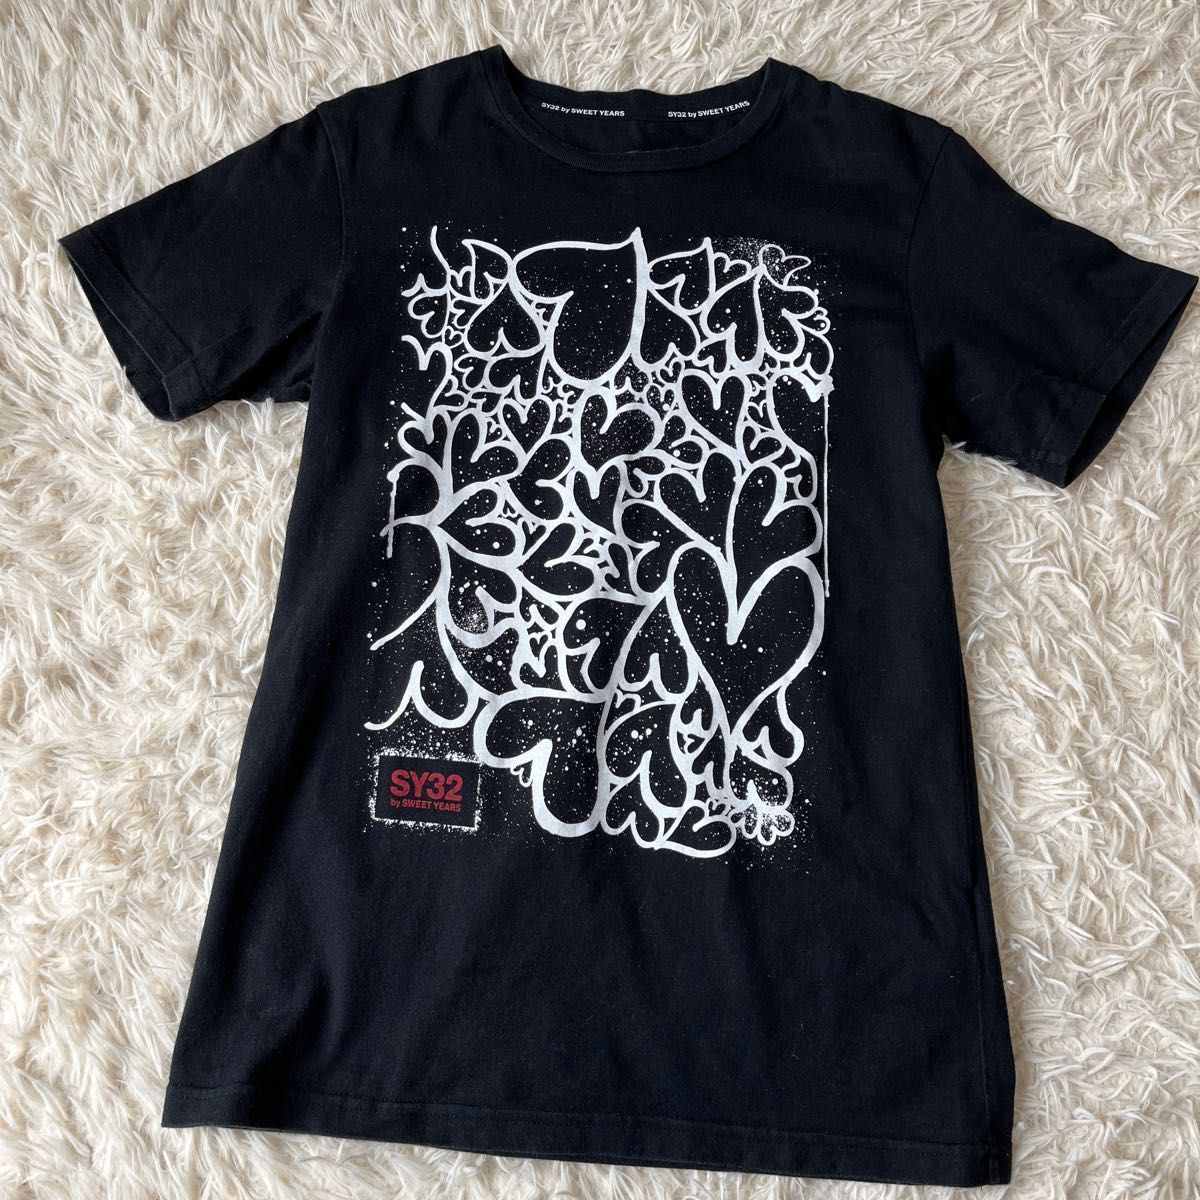 SY32 by SWEET YEARS  ハート柄プリント  半袖Tシャツ  ブラック　Sサイズ